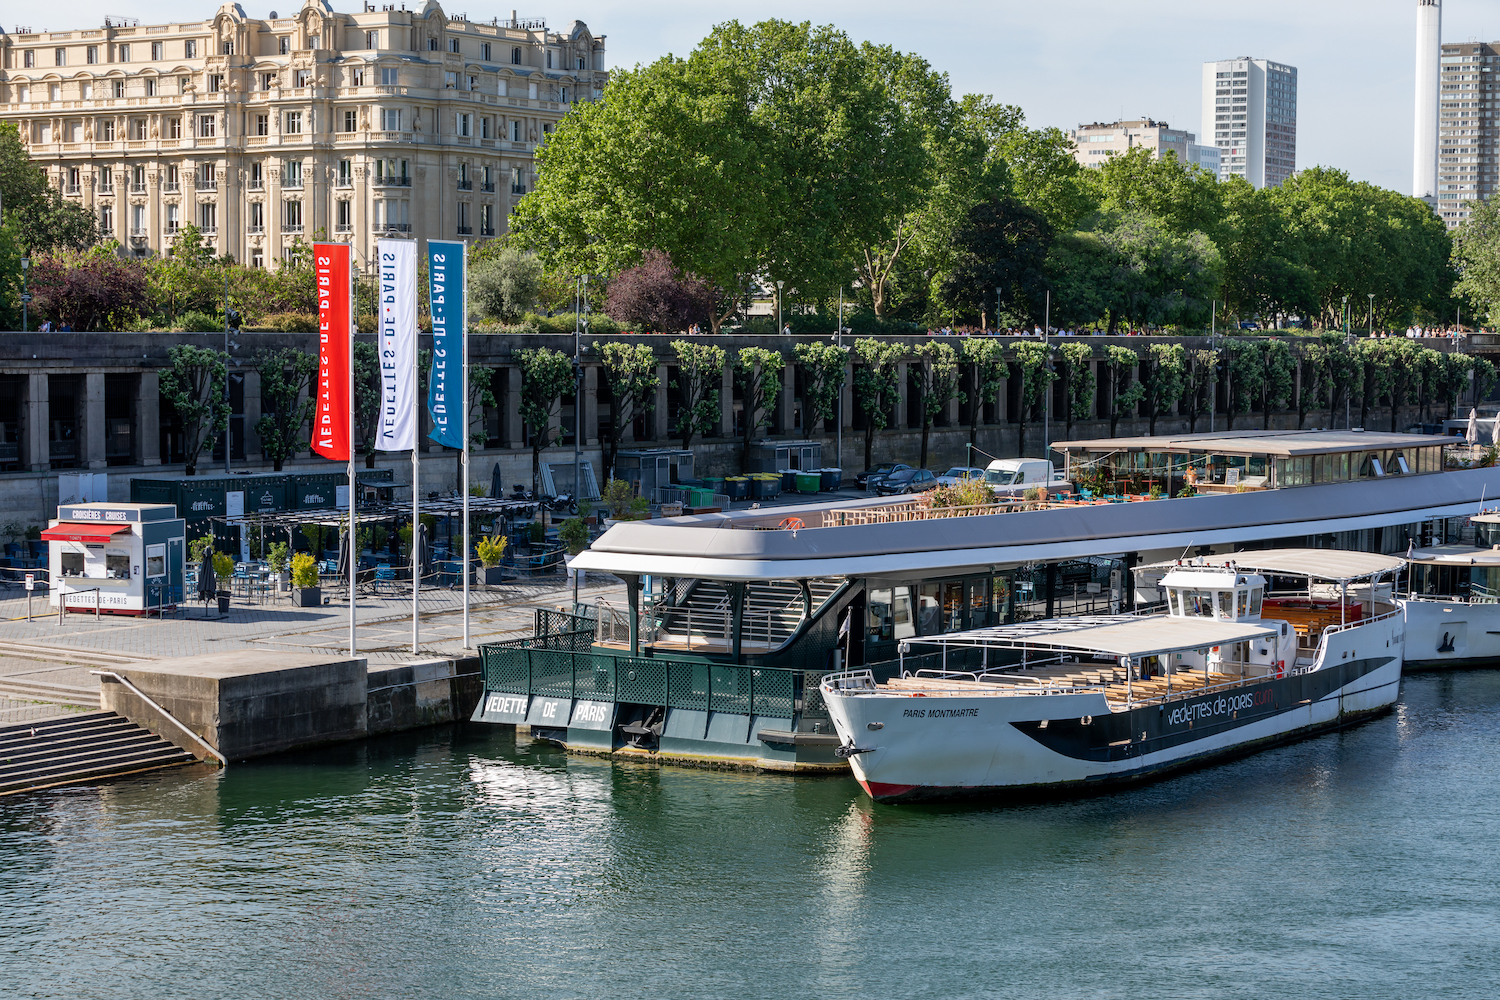 Le nouveau ponton est installé au pied de la tour Eiffel (©Vedettes de Paris)